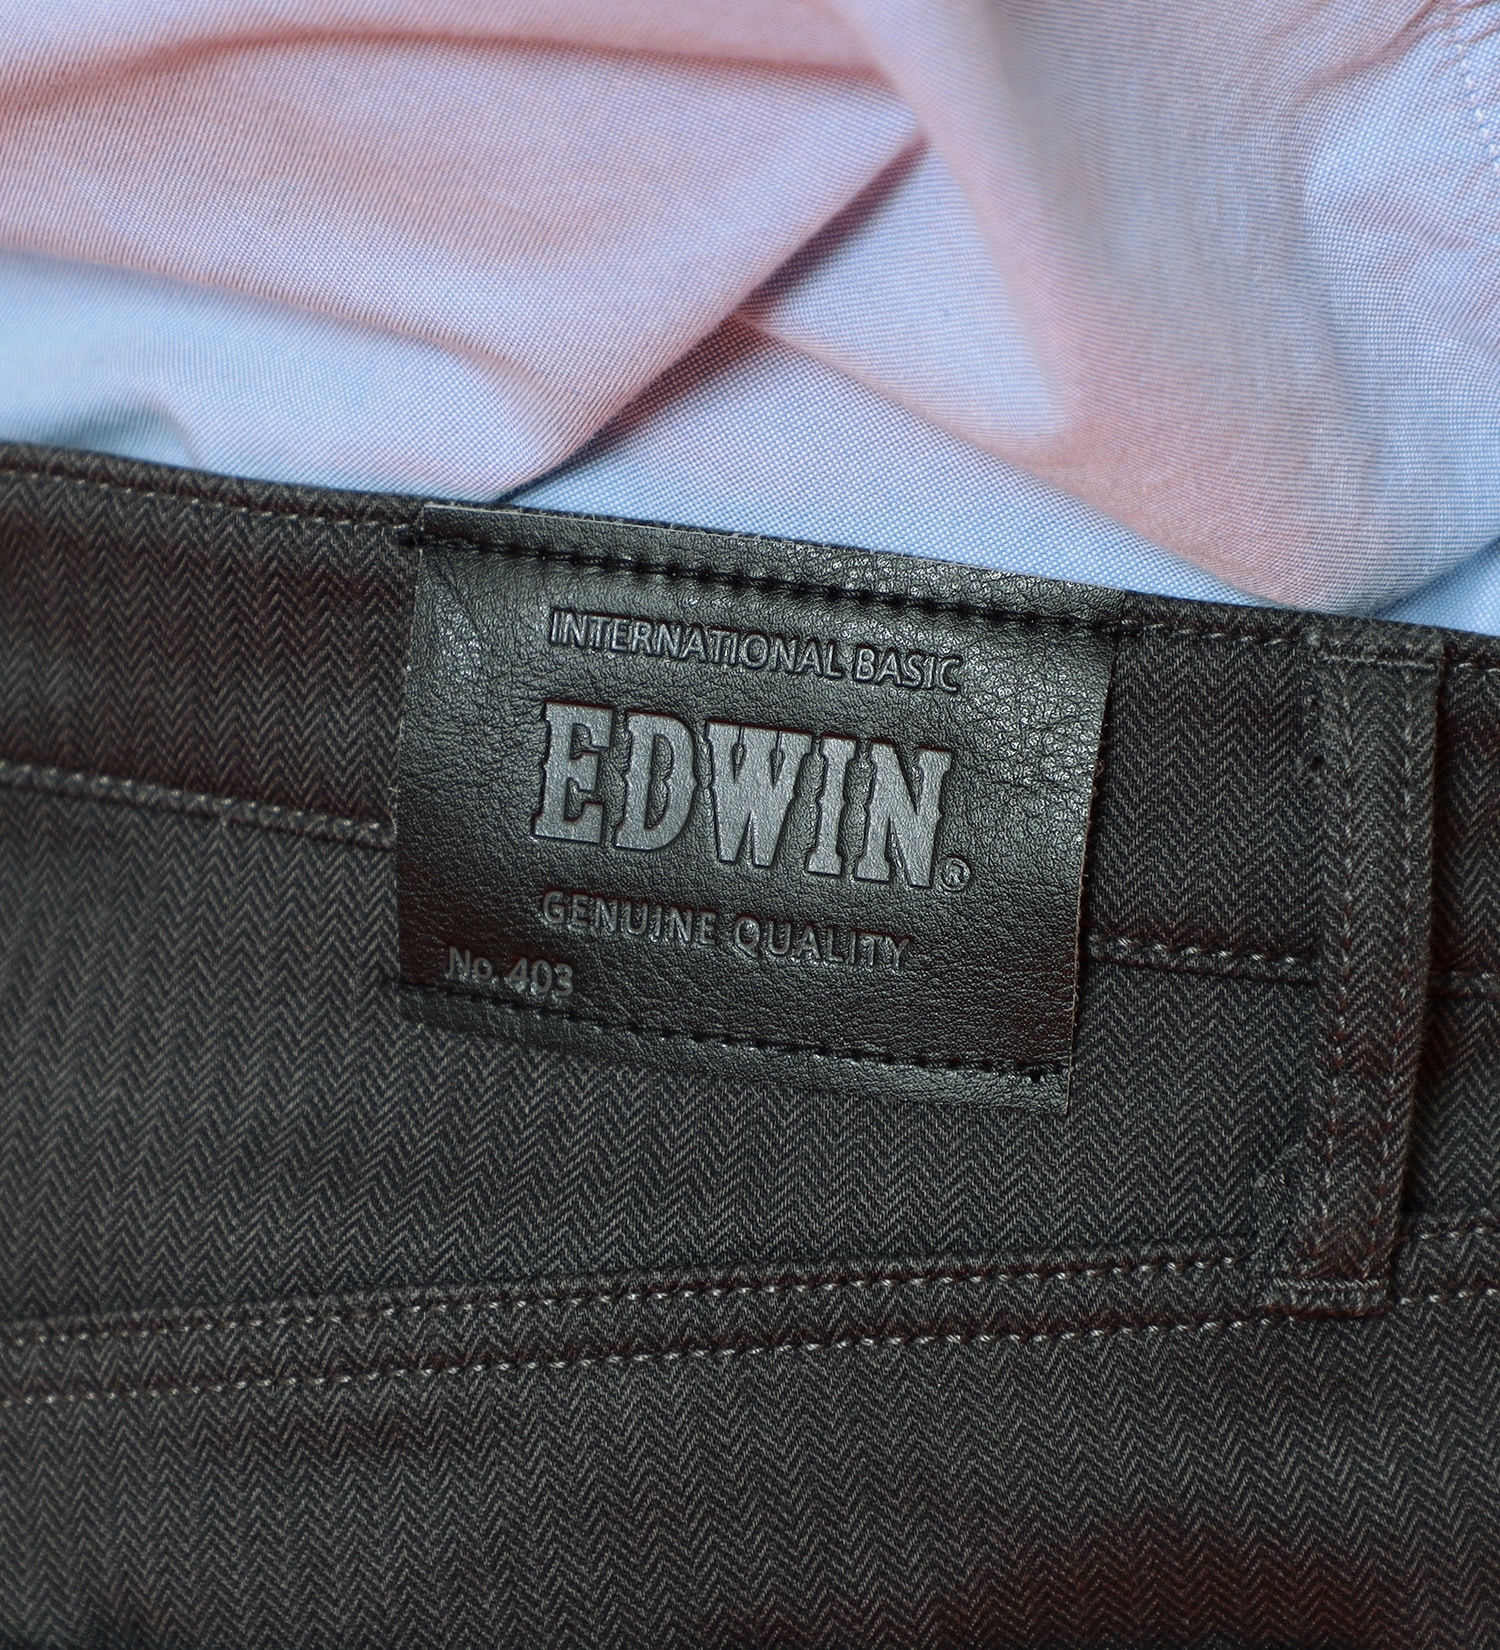 EDWIN(エドウイン)の【BLACKFRIDAY】2層で暖かい EDWIN インターナショナルベーシック レギュラーストレートパンツ403 WILD FIRE 2層ボンディング構造 【暖】|パンツ/パンツ/メンズ|チャコールグレー